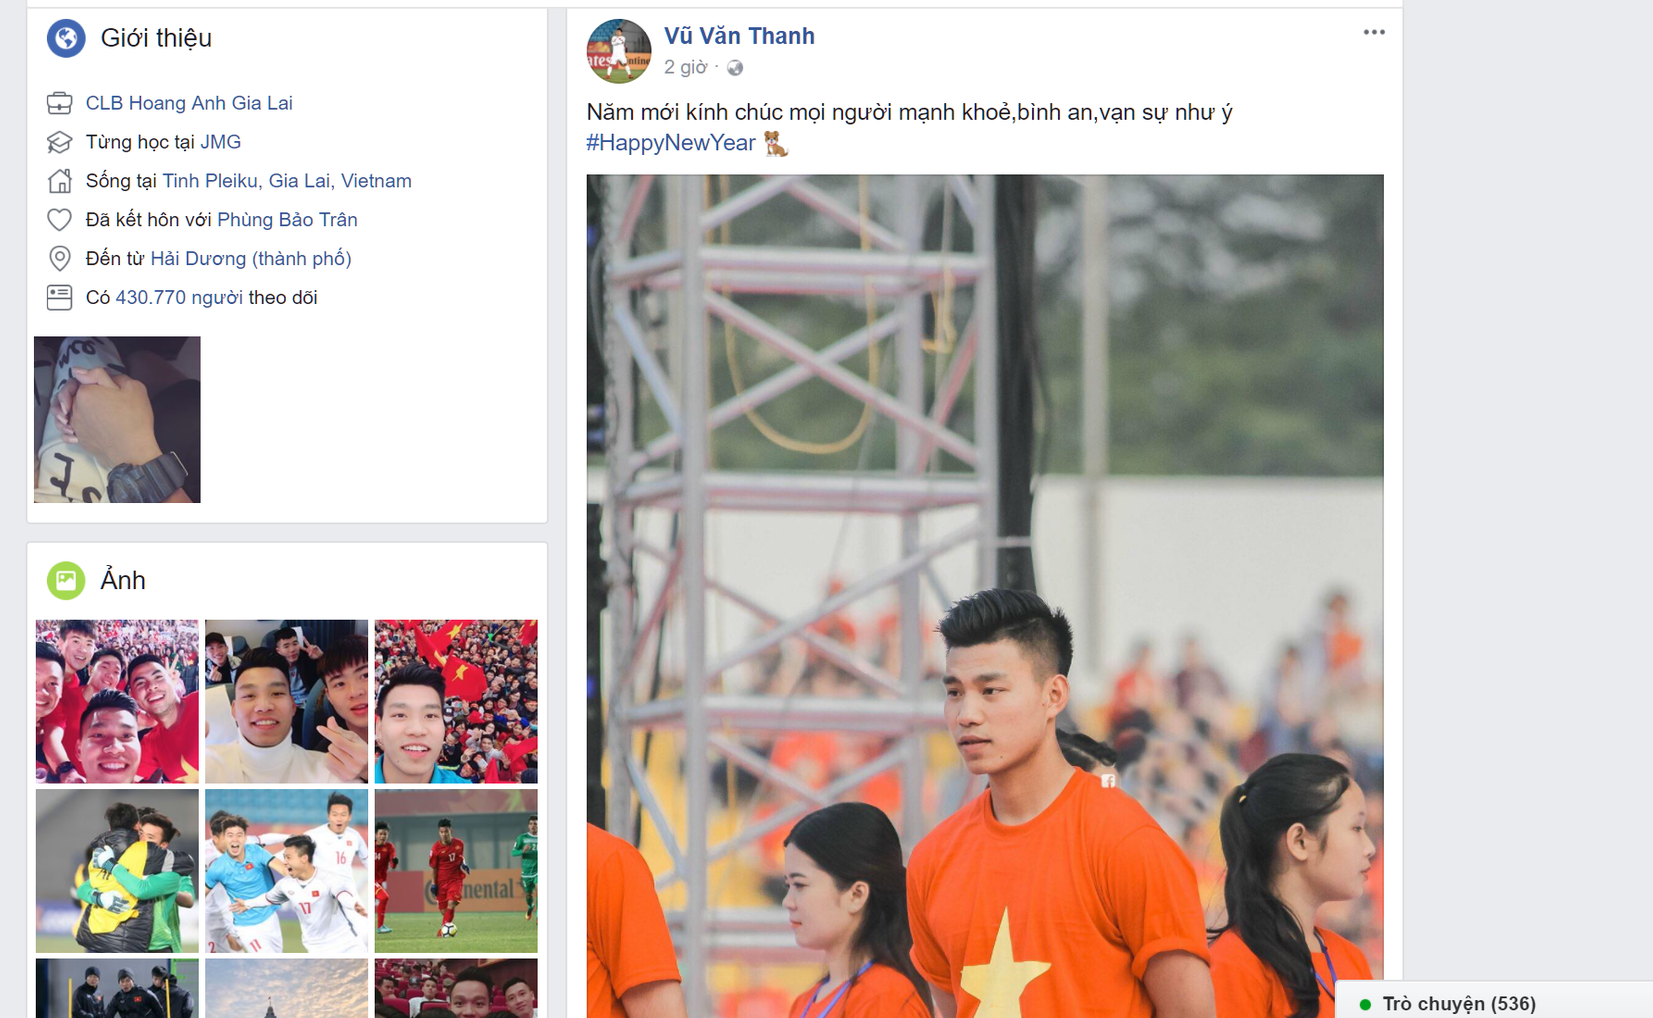 Với tinh thần ơn nghĩa và tinh thần đấu tranh, tuyển U23 Việt Nam đã thu hút sự chú ý của cả thế giới. Hãy cùng xem những hình ảnh đầy sức sống về U23 Việt Nam, đầy hy vọng và tự hào về đội tuyển quốc gia của chúng ta.